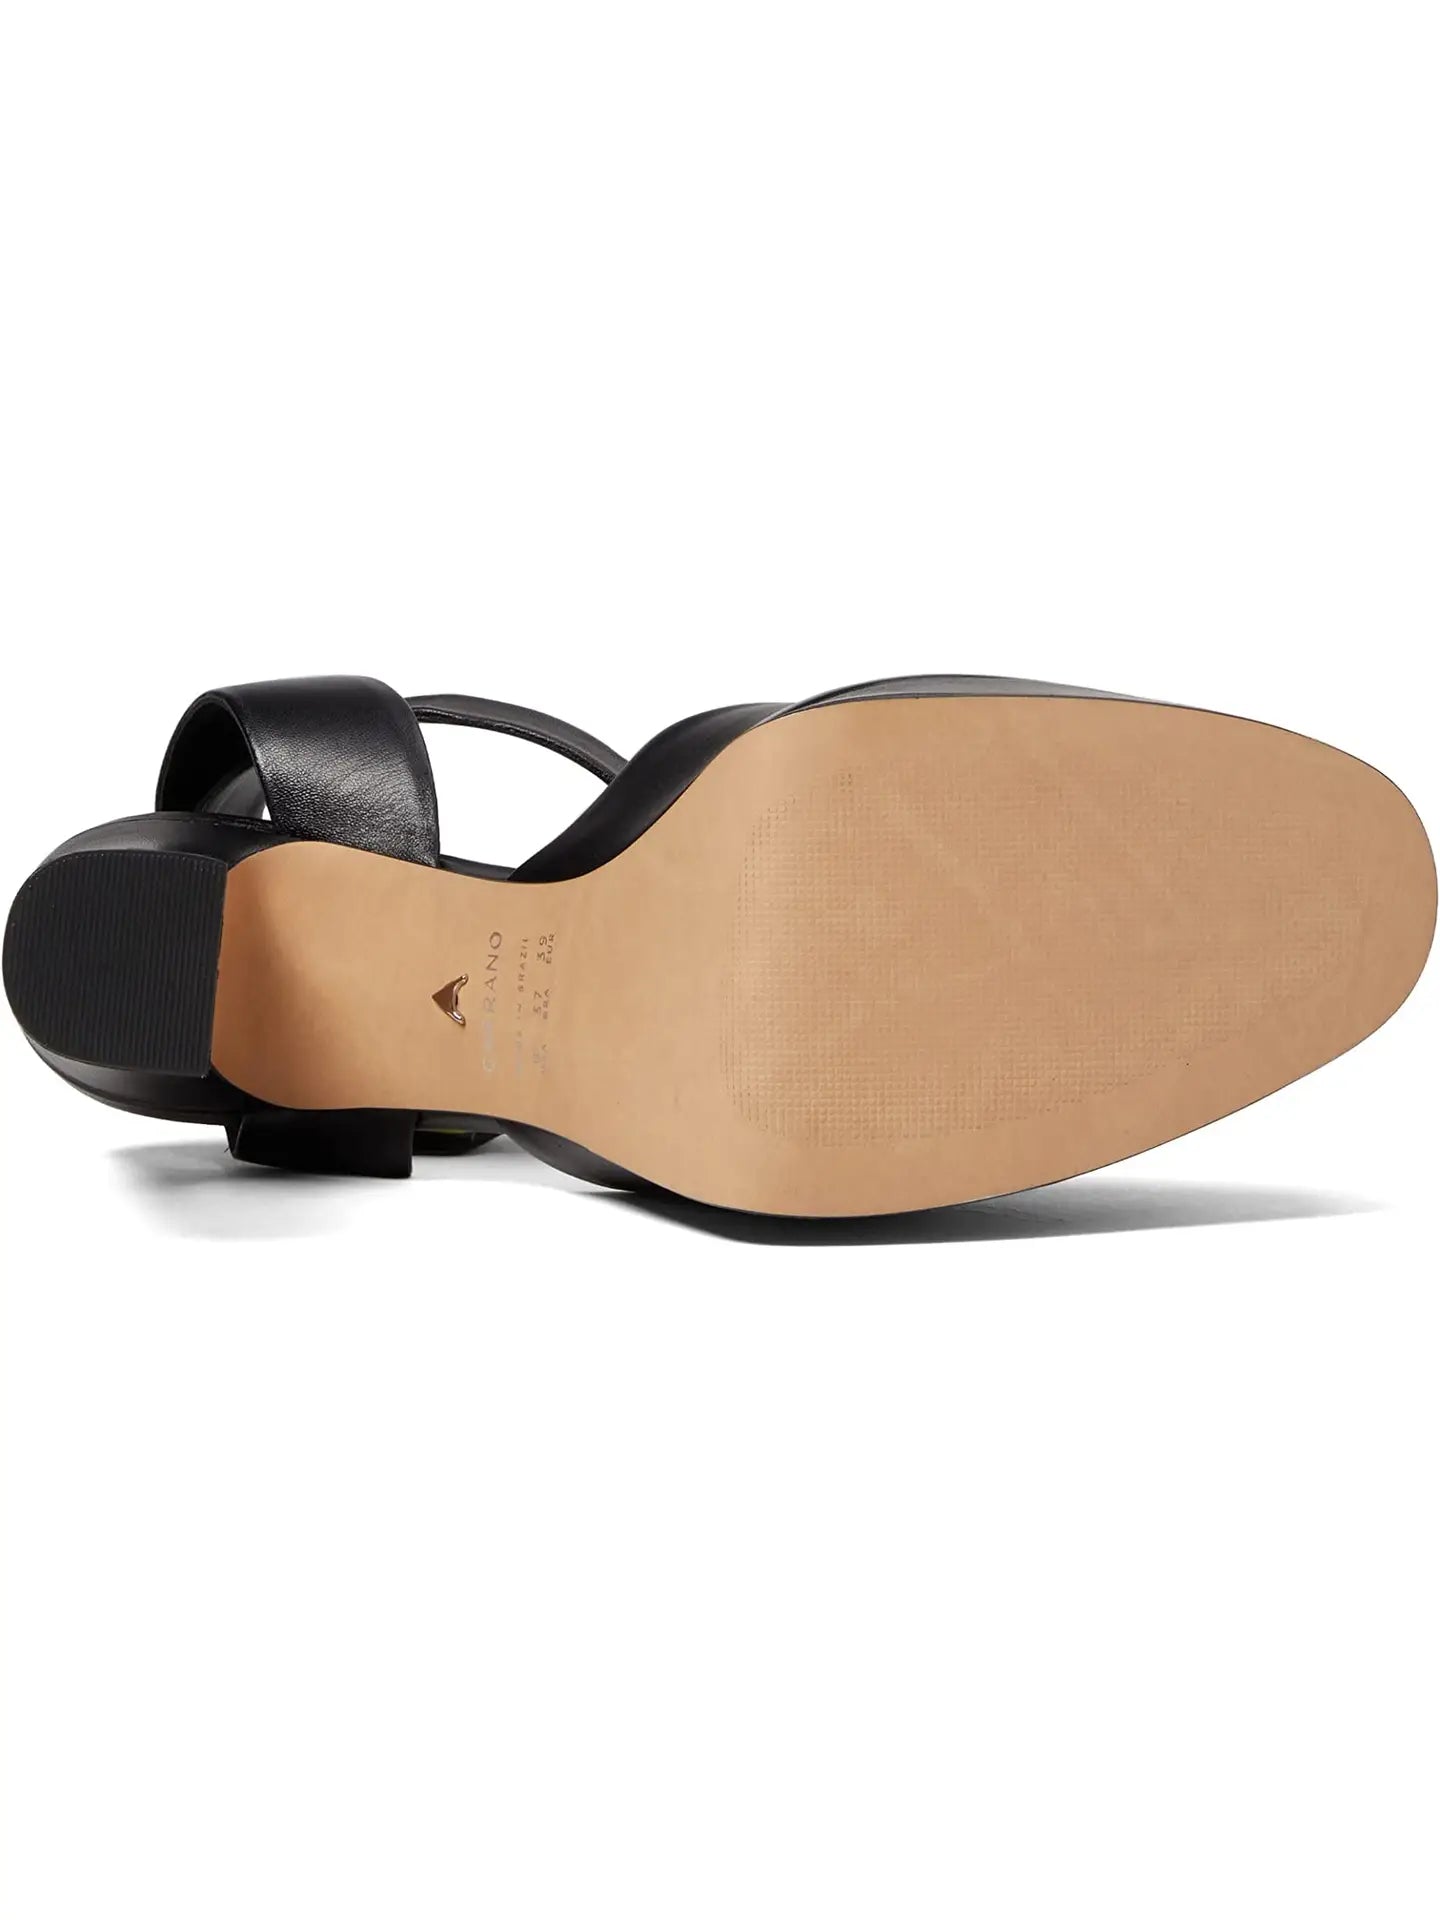 Ayana - Leather Platform Sandal Black